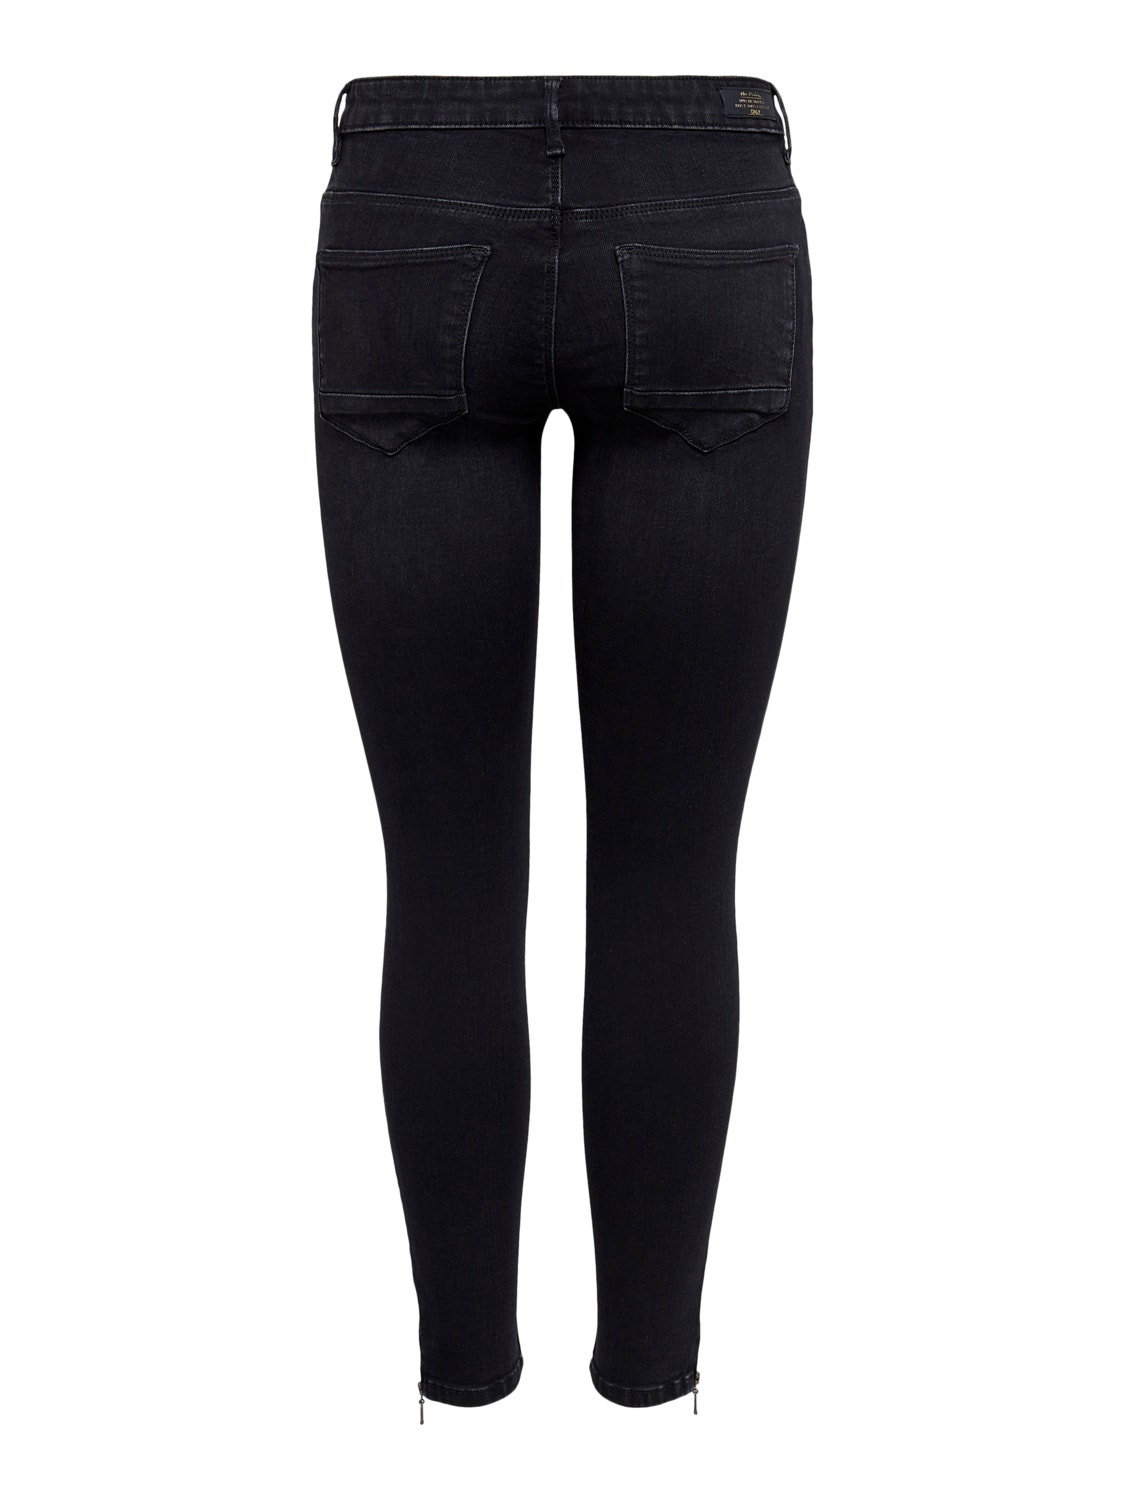 ONLY Skinny Fit Mittlere Taille Reißverschluss am Beinabschluss Jeans -Black - 15231587